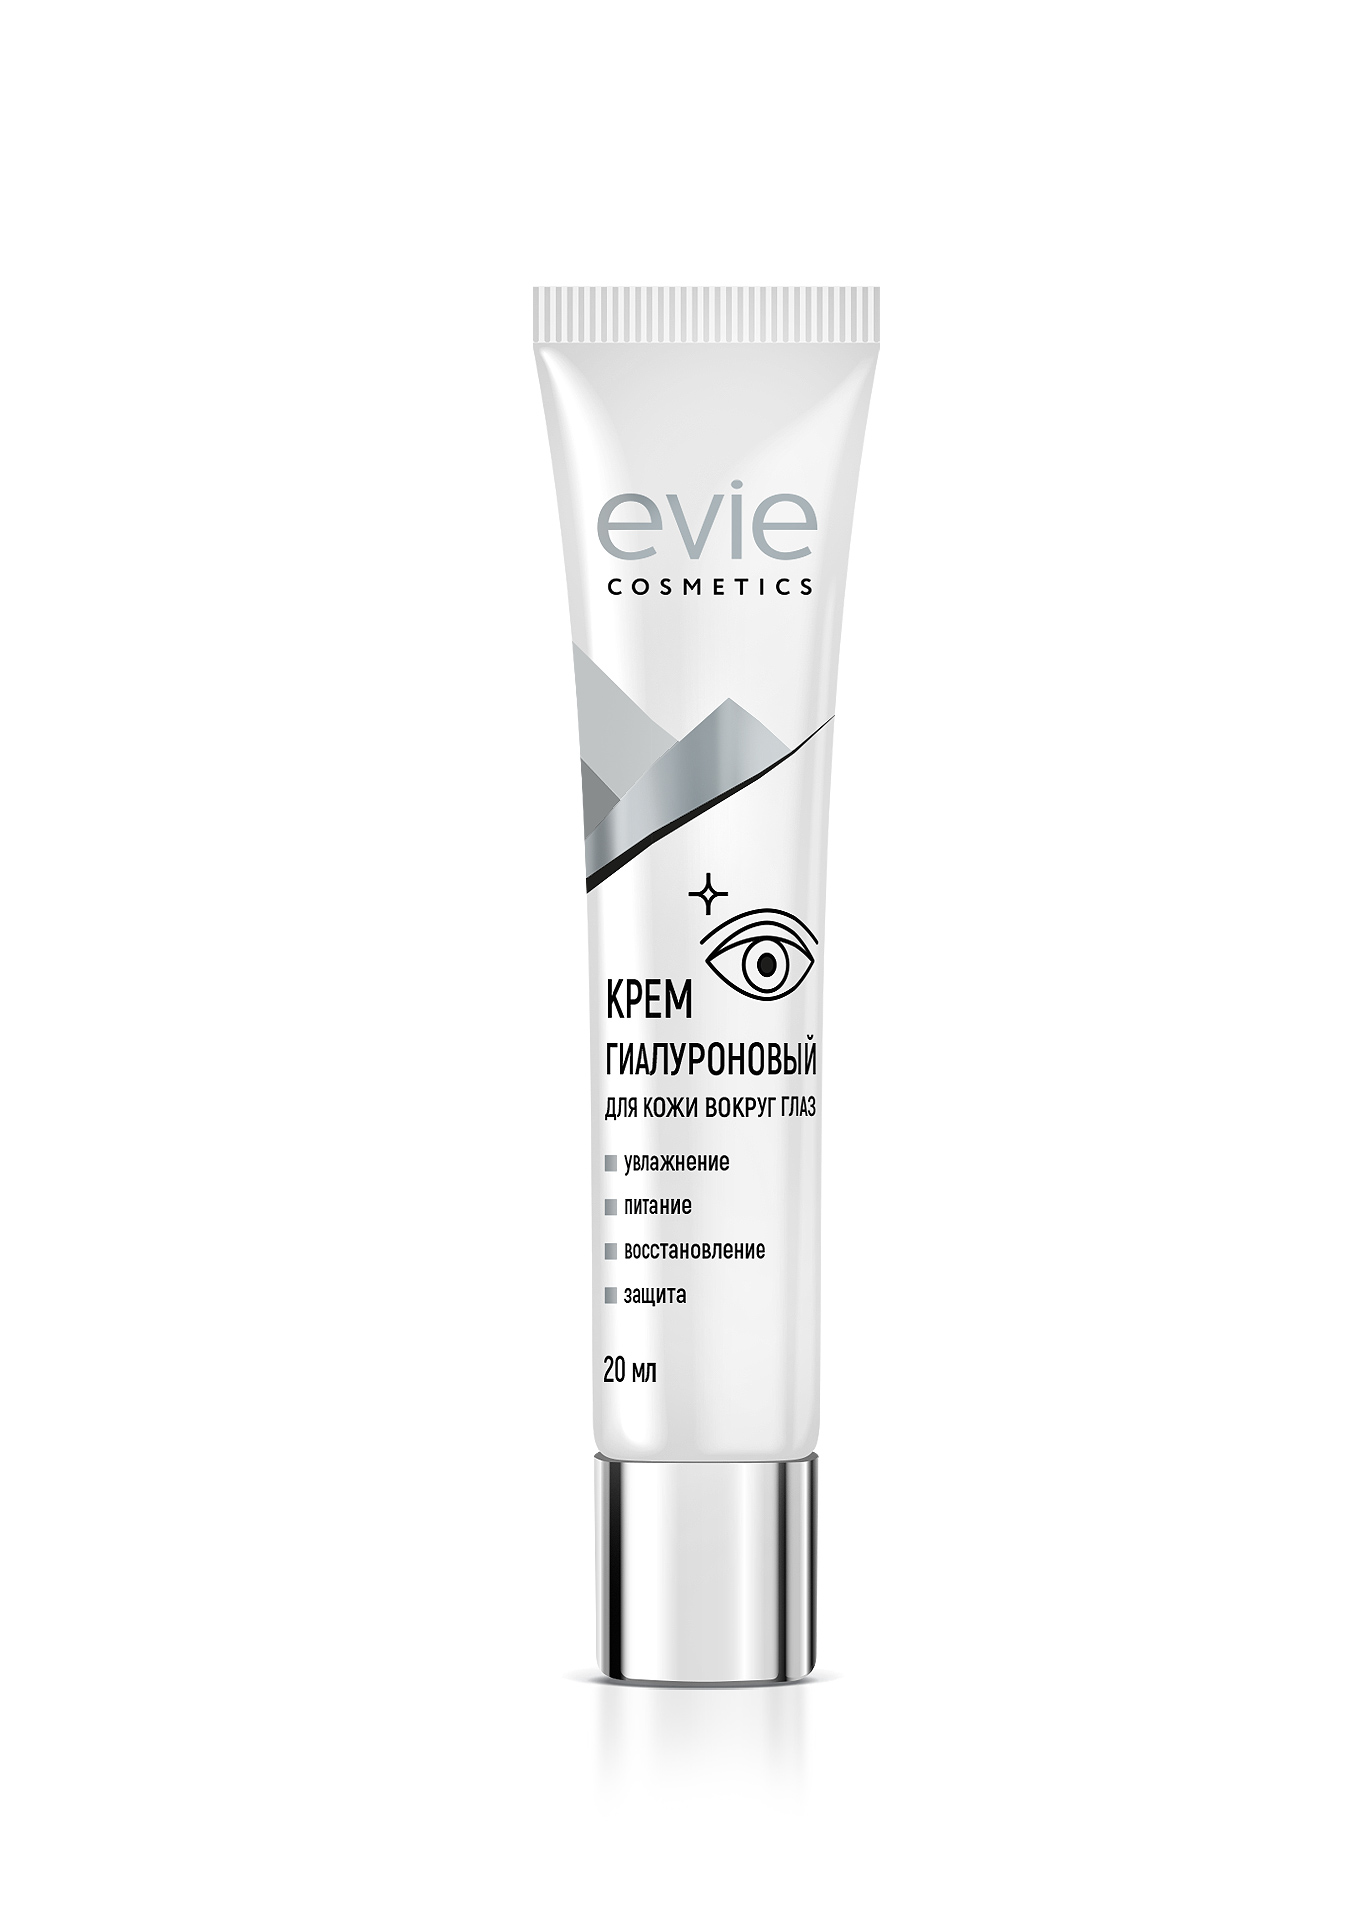 Evie cosmetics крем гиалуроновый для кожи вокруг глаз 20 мл